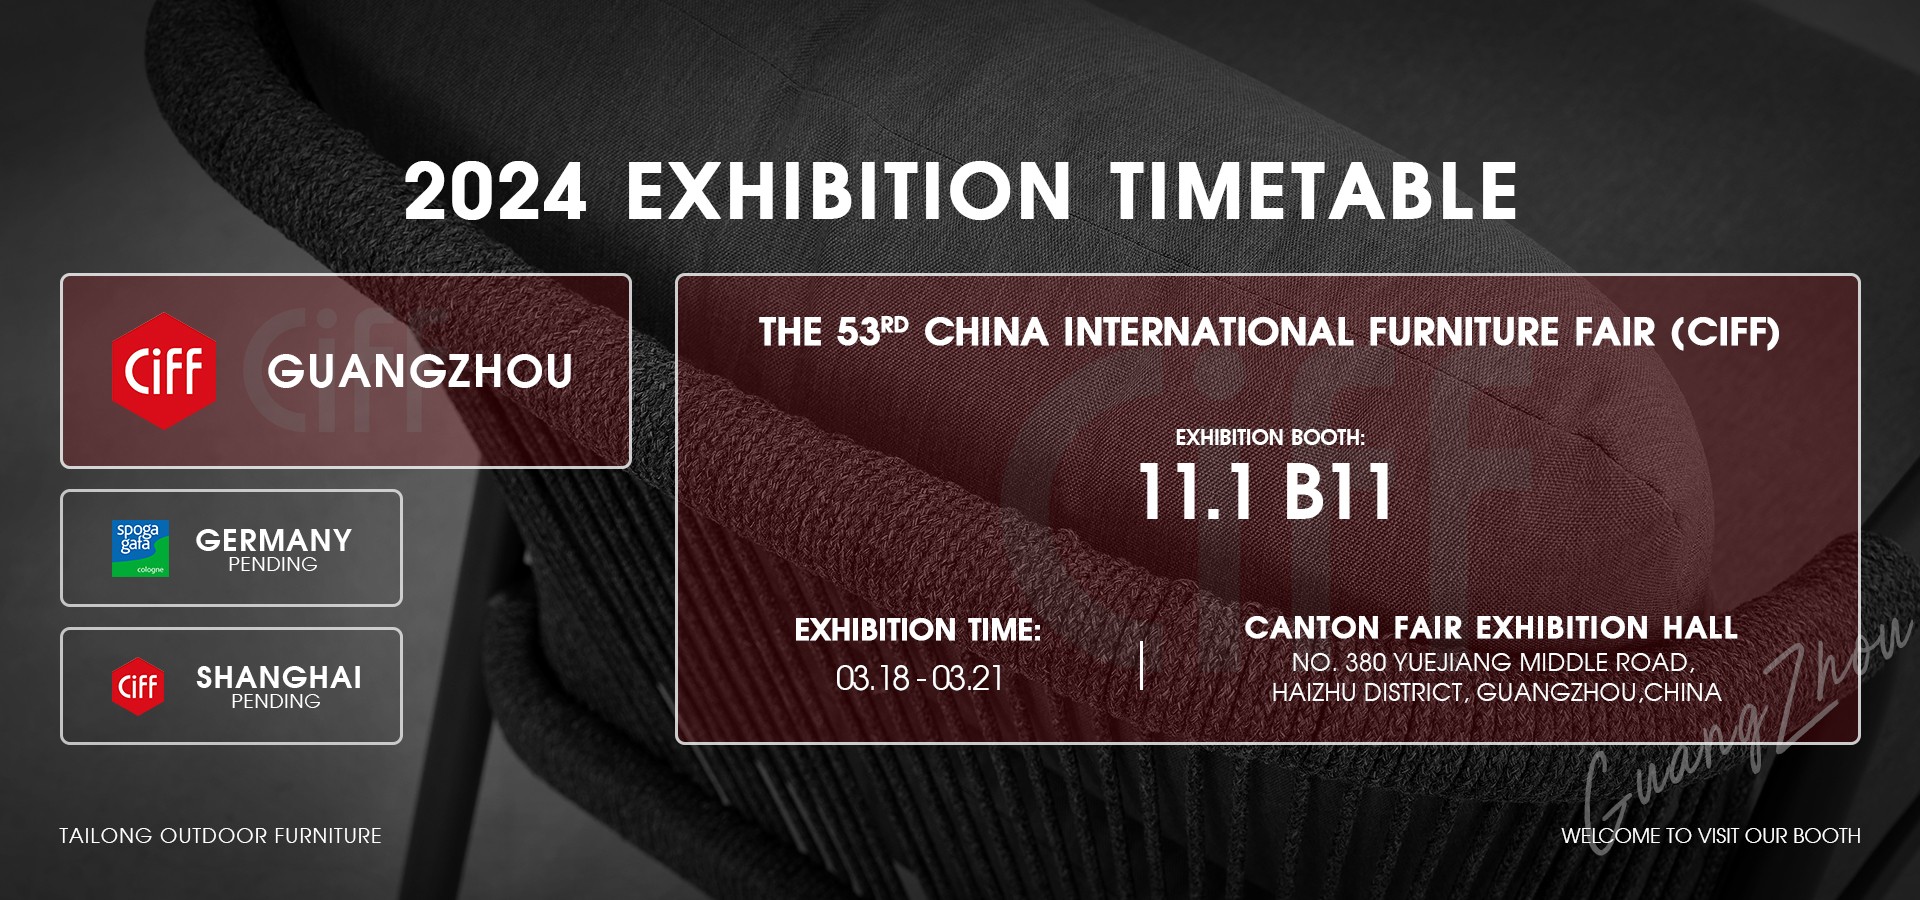 2024-Exhibition-schedule(1)